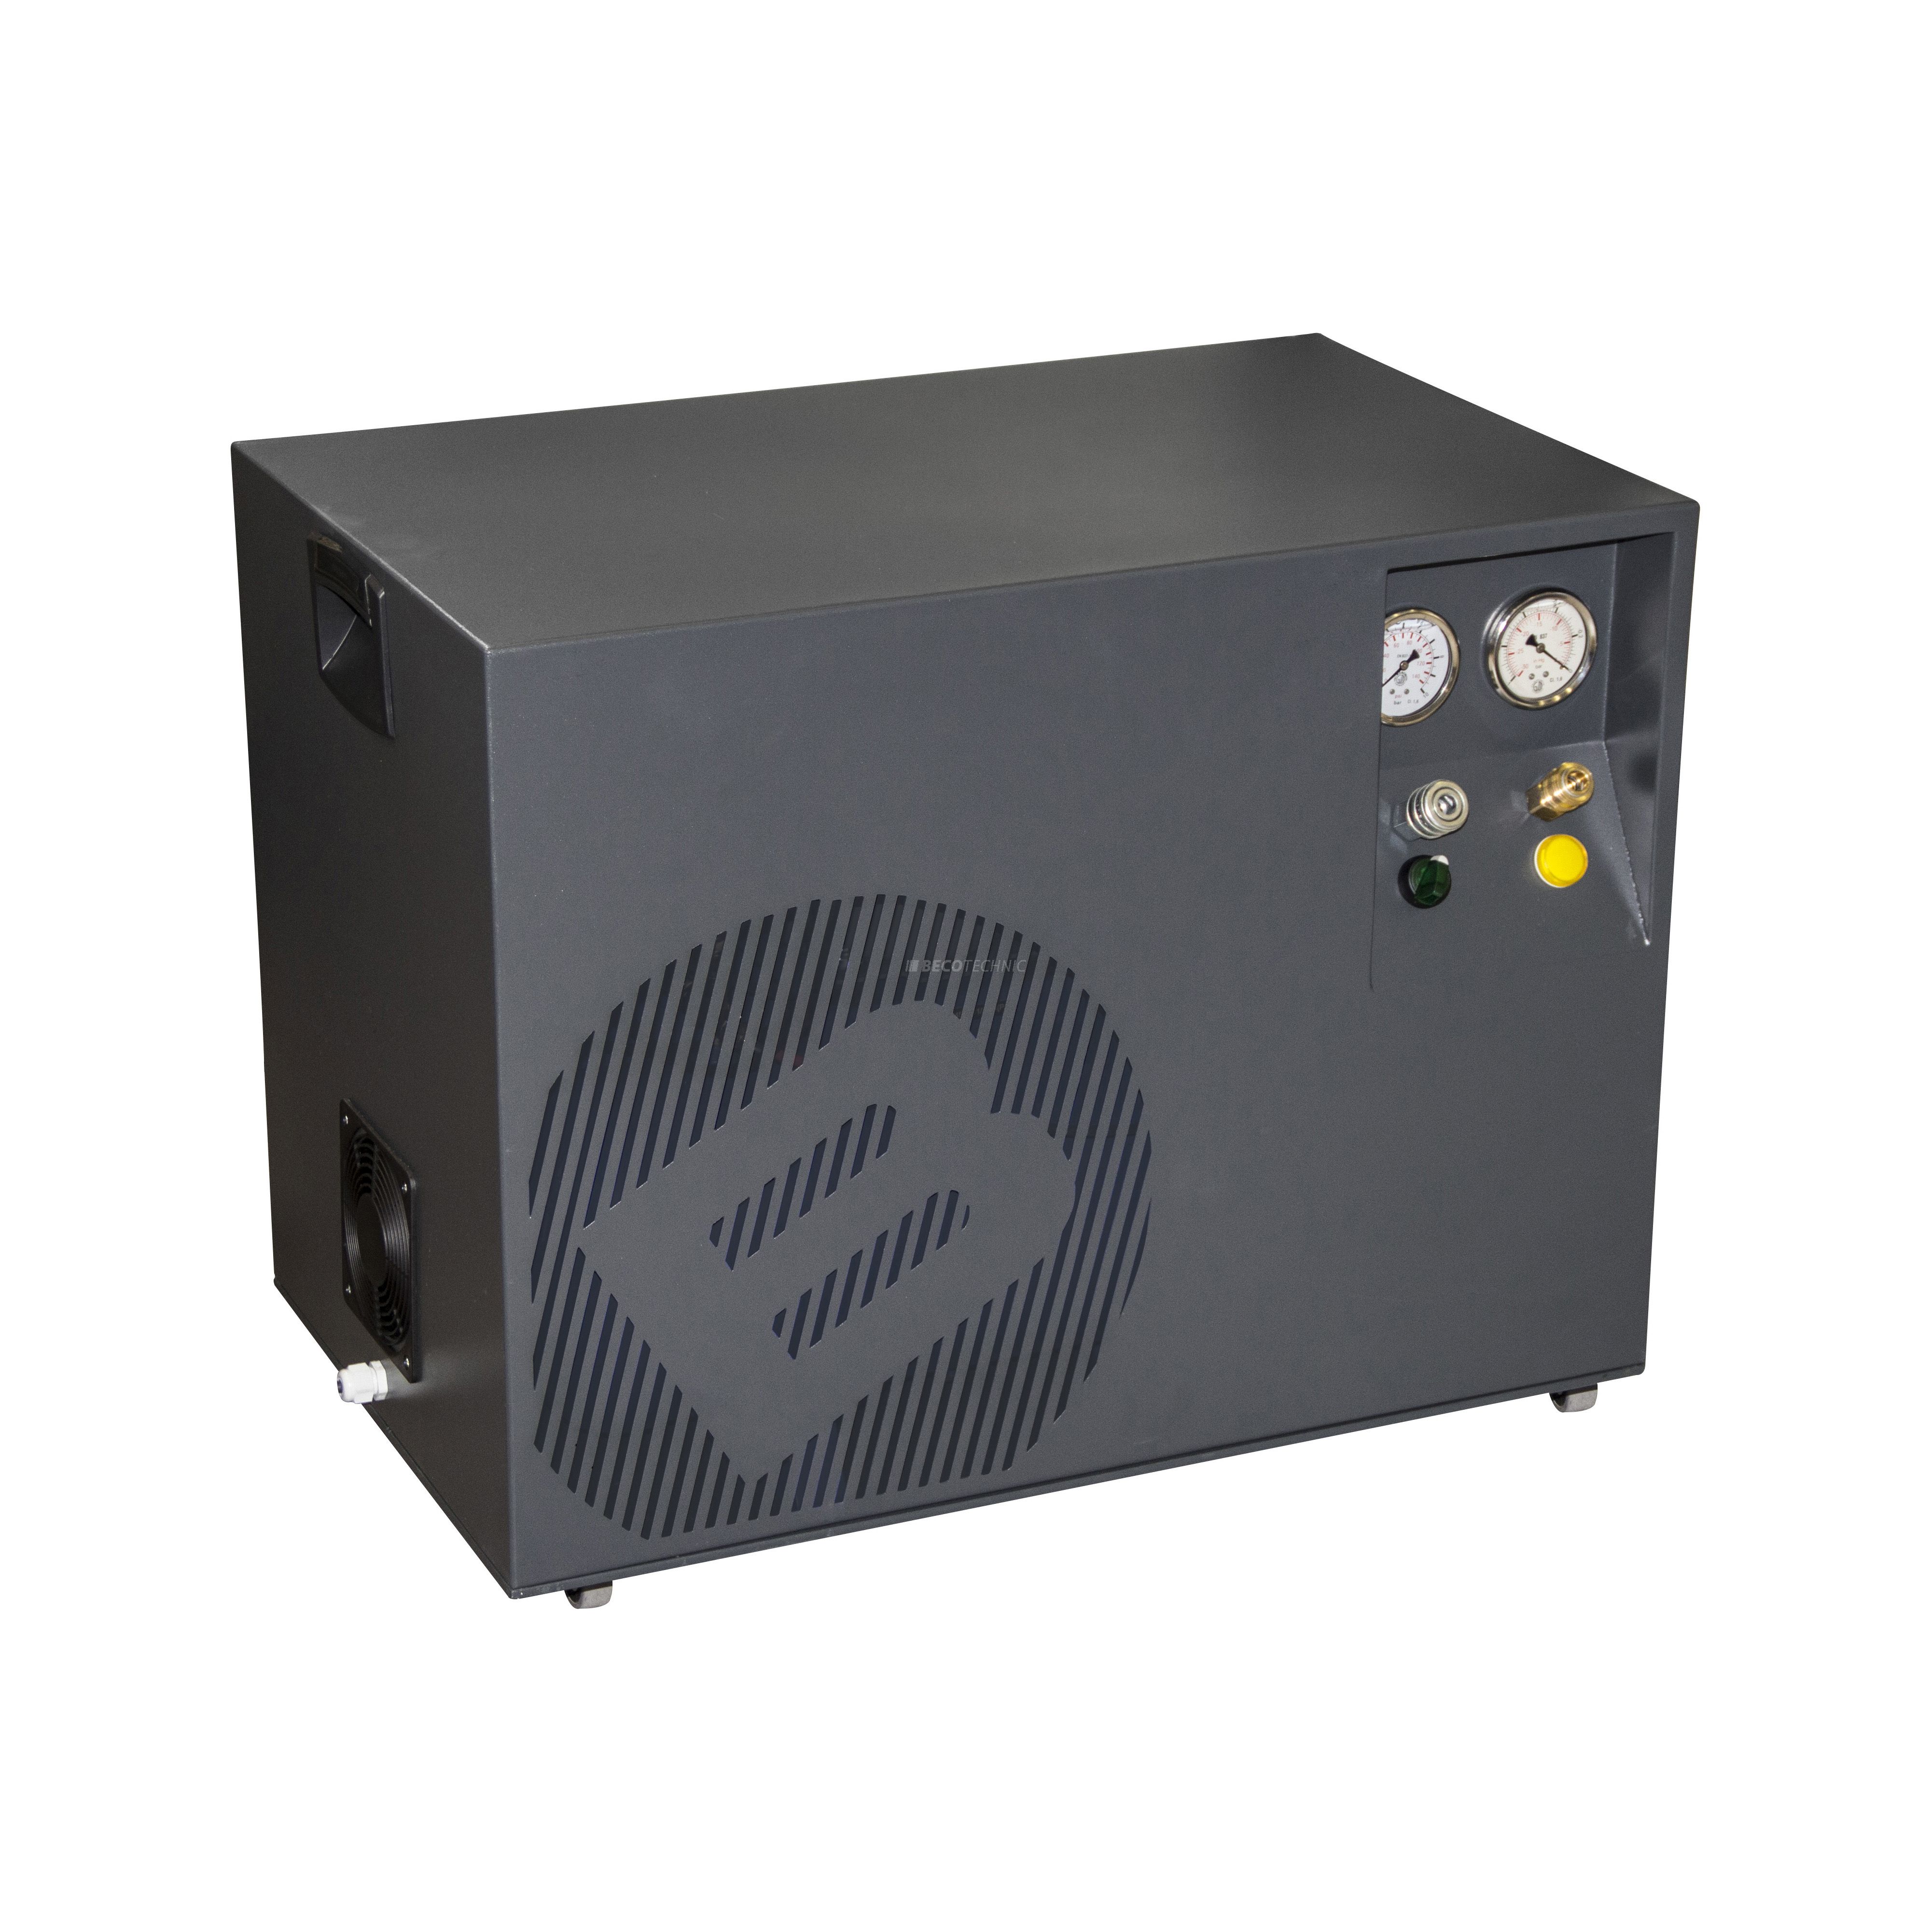 Bergeon 6100-230 Kombi-Vakuum-Kompressor mit Lufttrockner, 8 bar, 2x 14 L, 40 dB